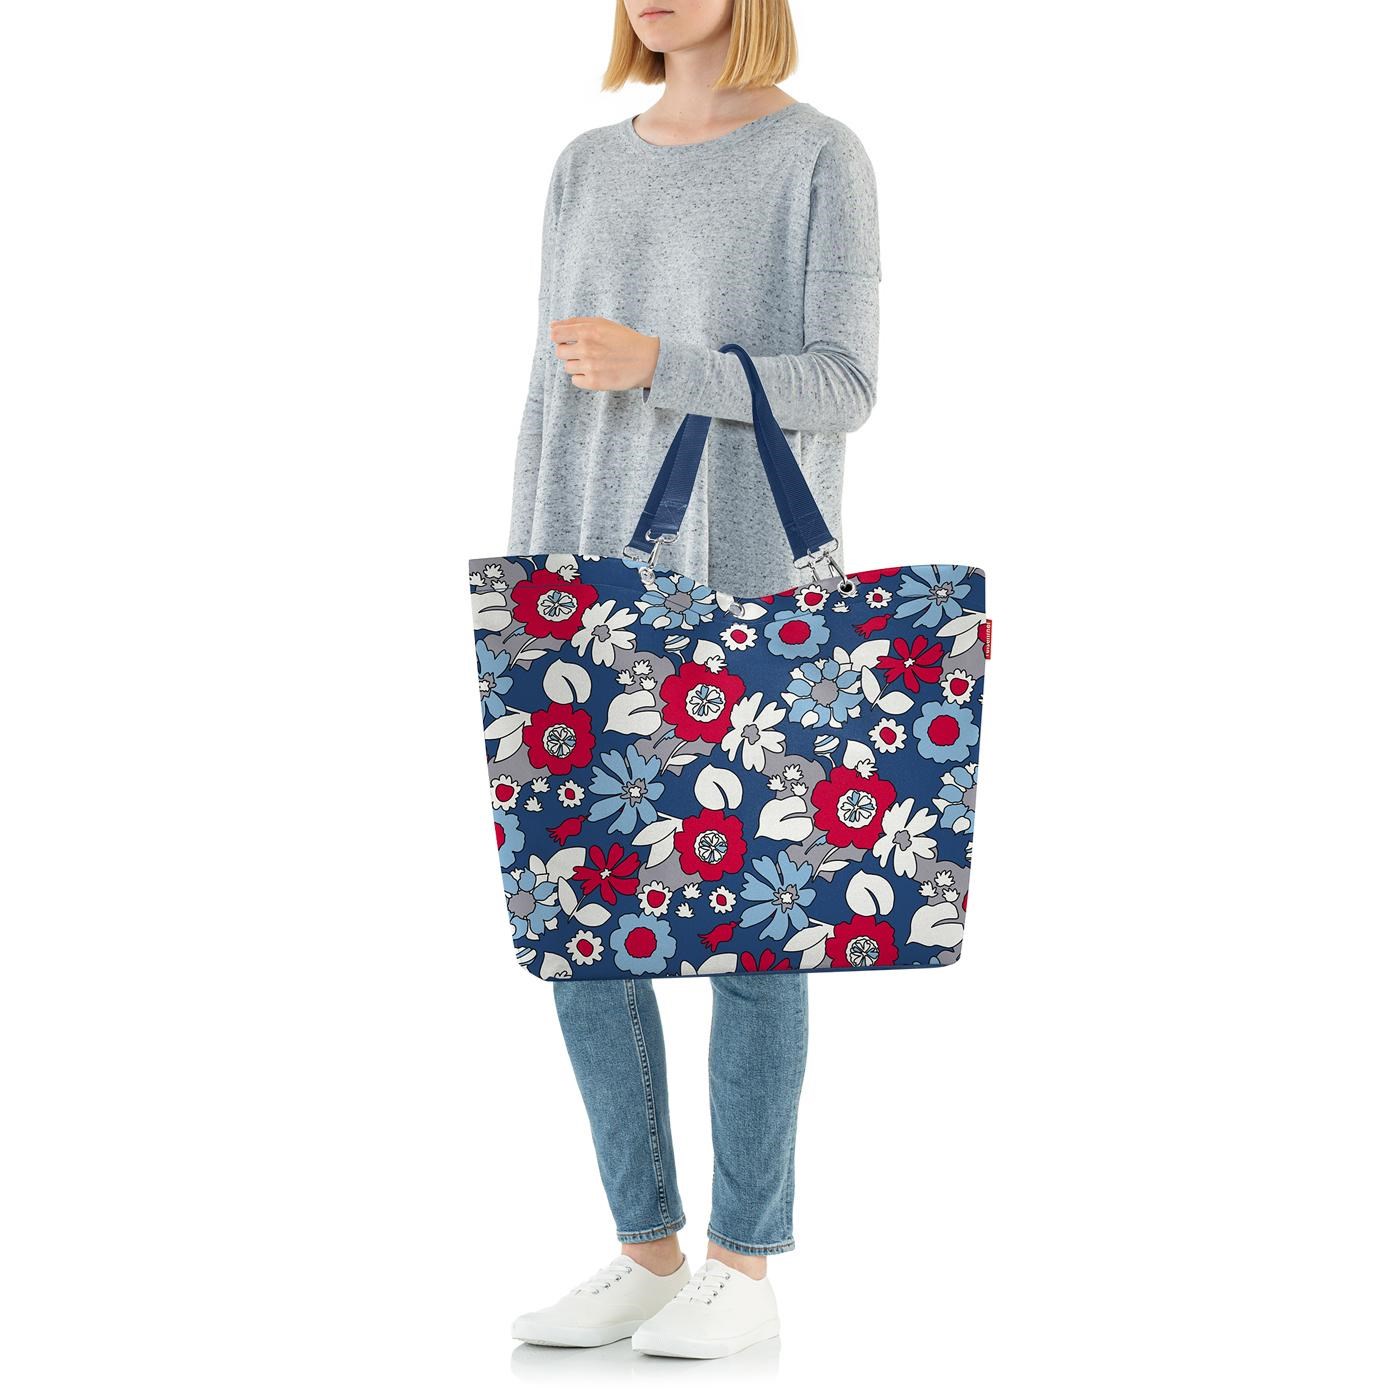 Taška přes rameno Shopper XL florist indigo_1